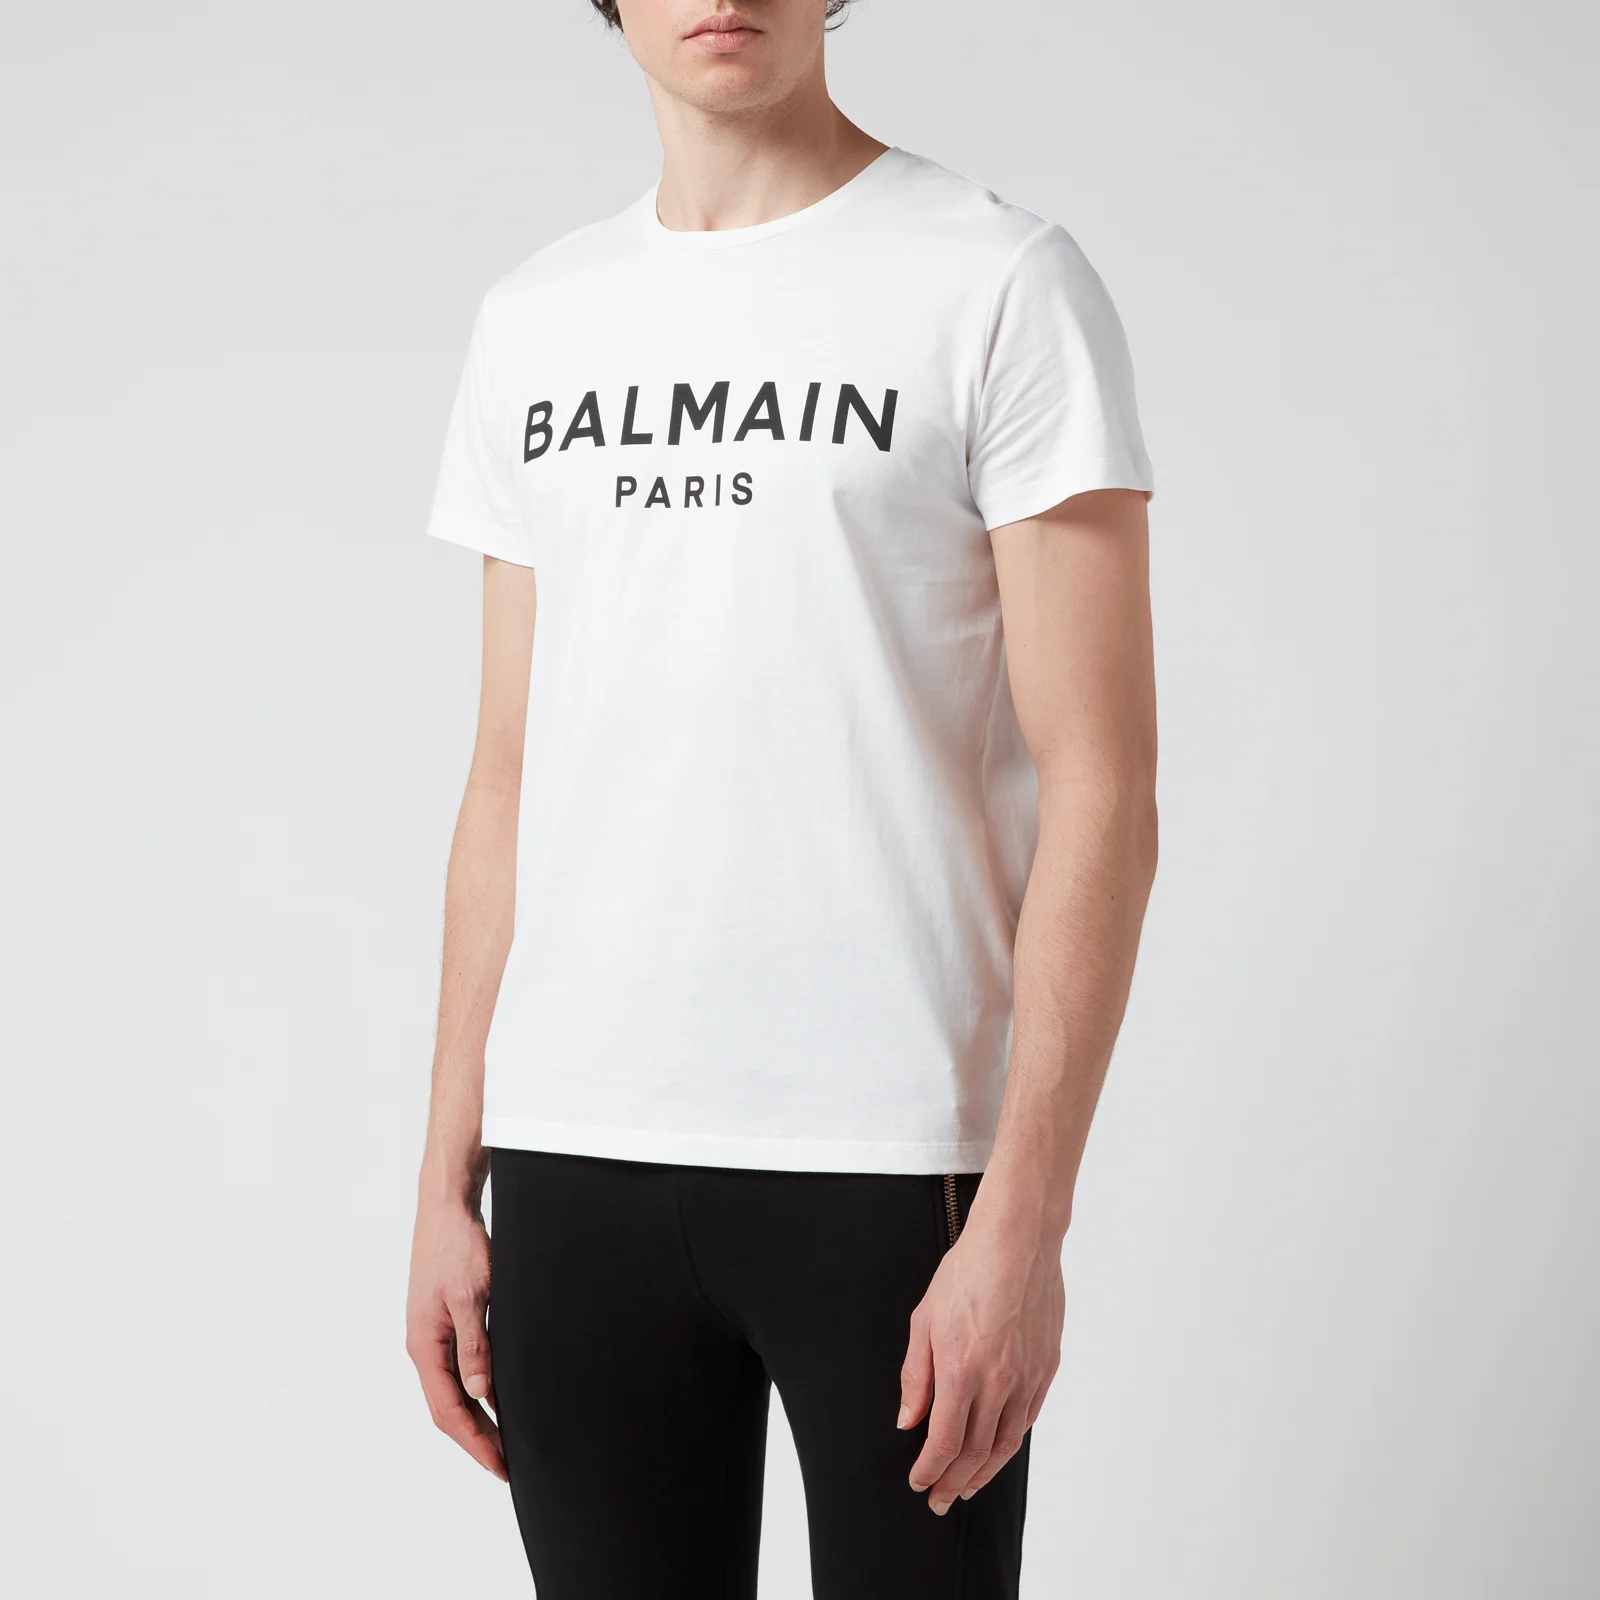 Balmain Men's Printed T-Shirt - White/Black Image 1